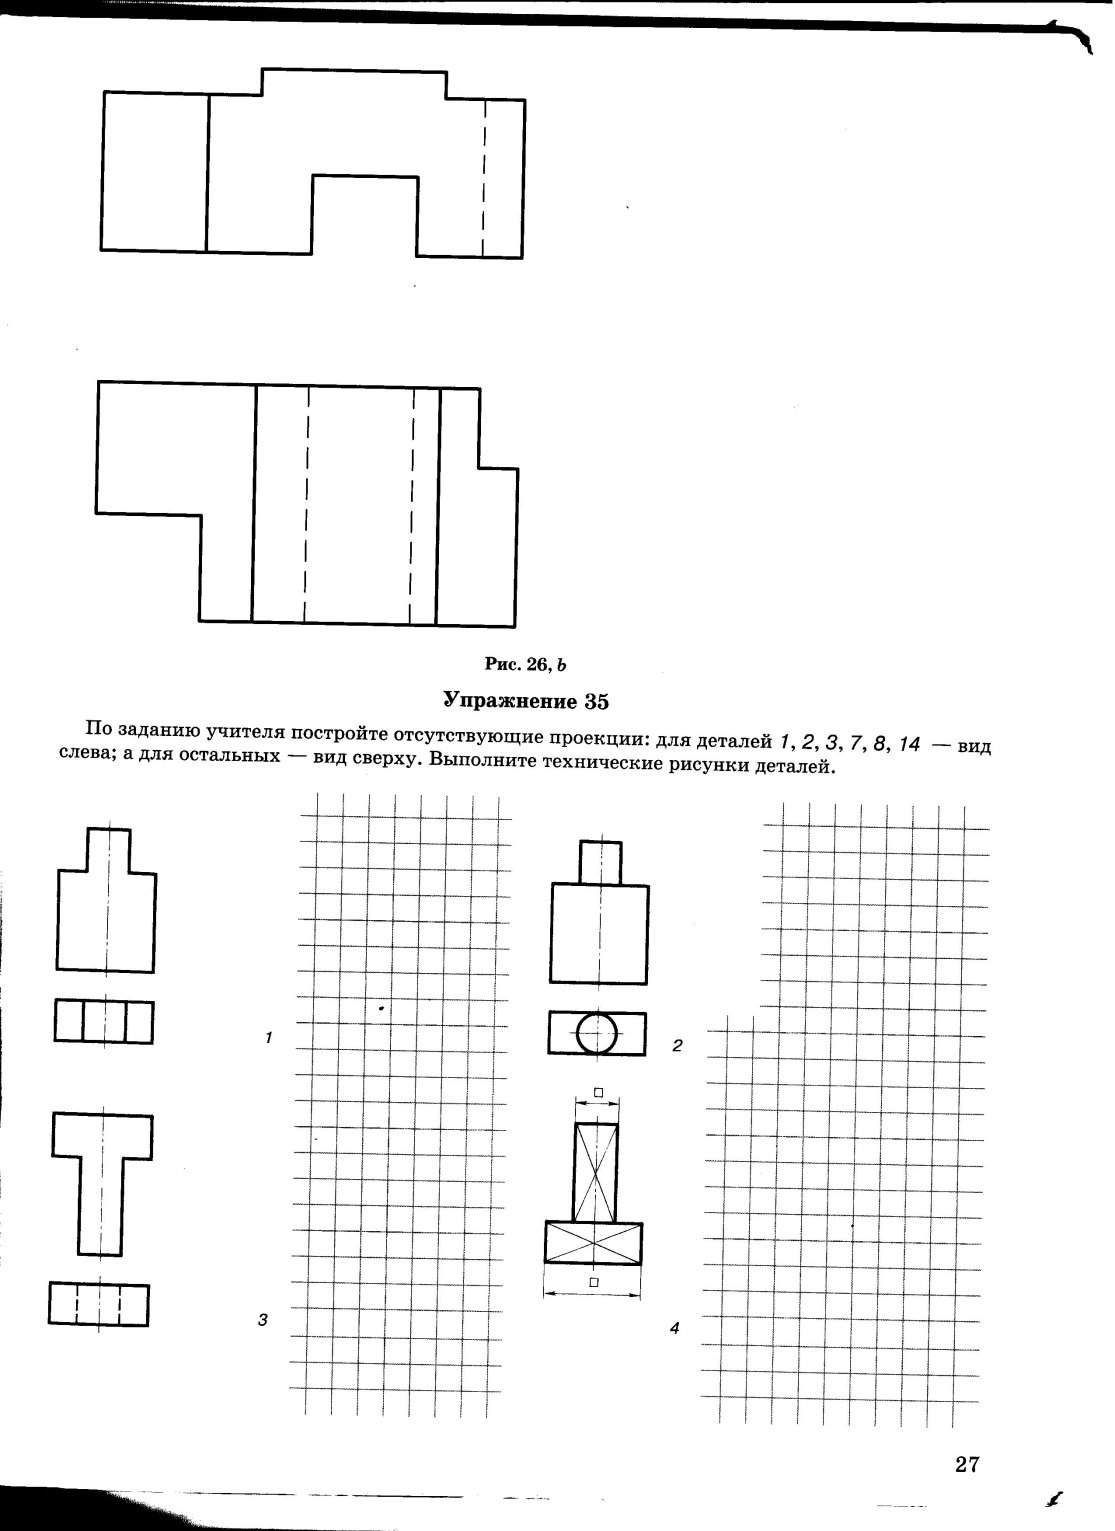 Раздаточный материал для уроков черчения в 8 классах по учебнику Ботвинникова